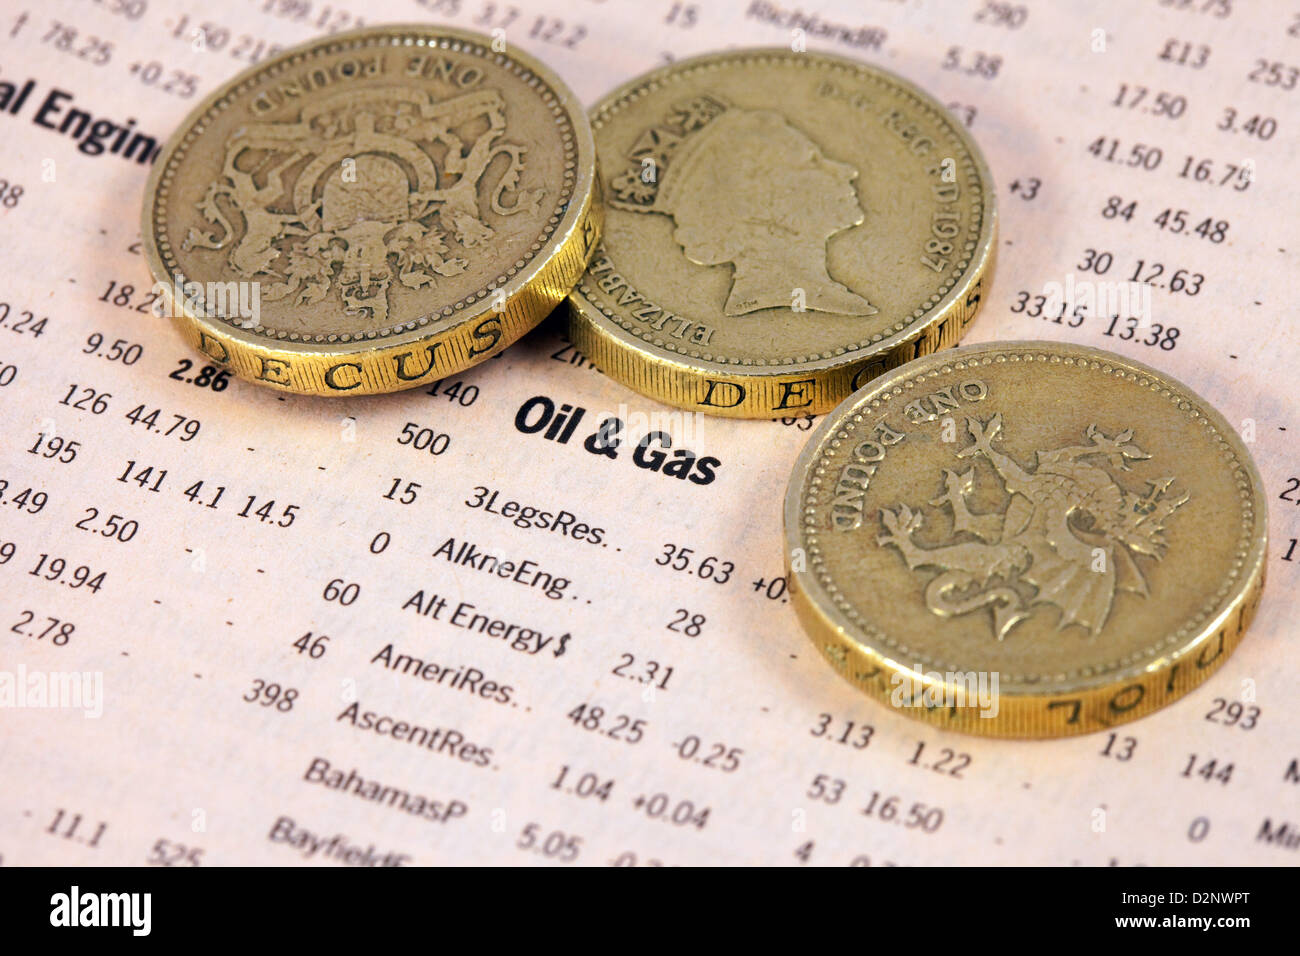 Gaz de pétrole et de la valeur des actions énumérées dans le Financial Times avec pièces livre - concept de l'argent du pétrole Banque D'Images